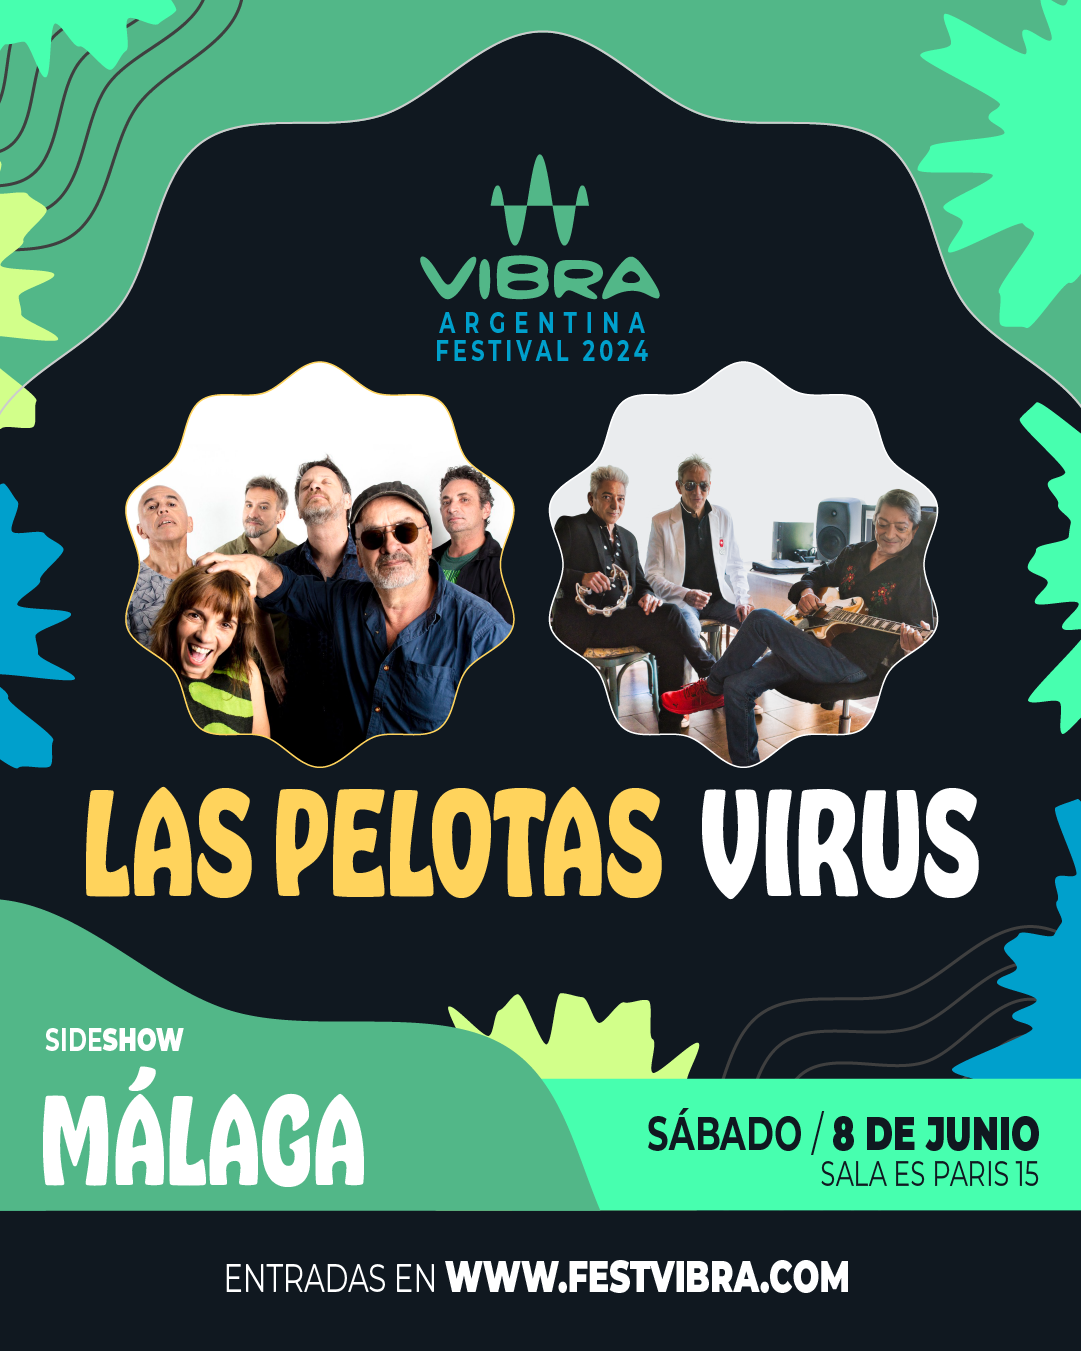 VIBRA ARGENTINA FESTIVAL 2024 en MALAGA, sala paris 15, Sabado 8 Junio Las Pelotas y Virus. Entradas y Info: www.festvibra.com